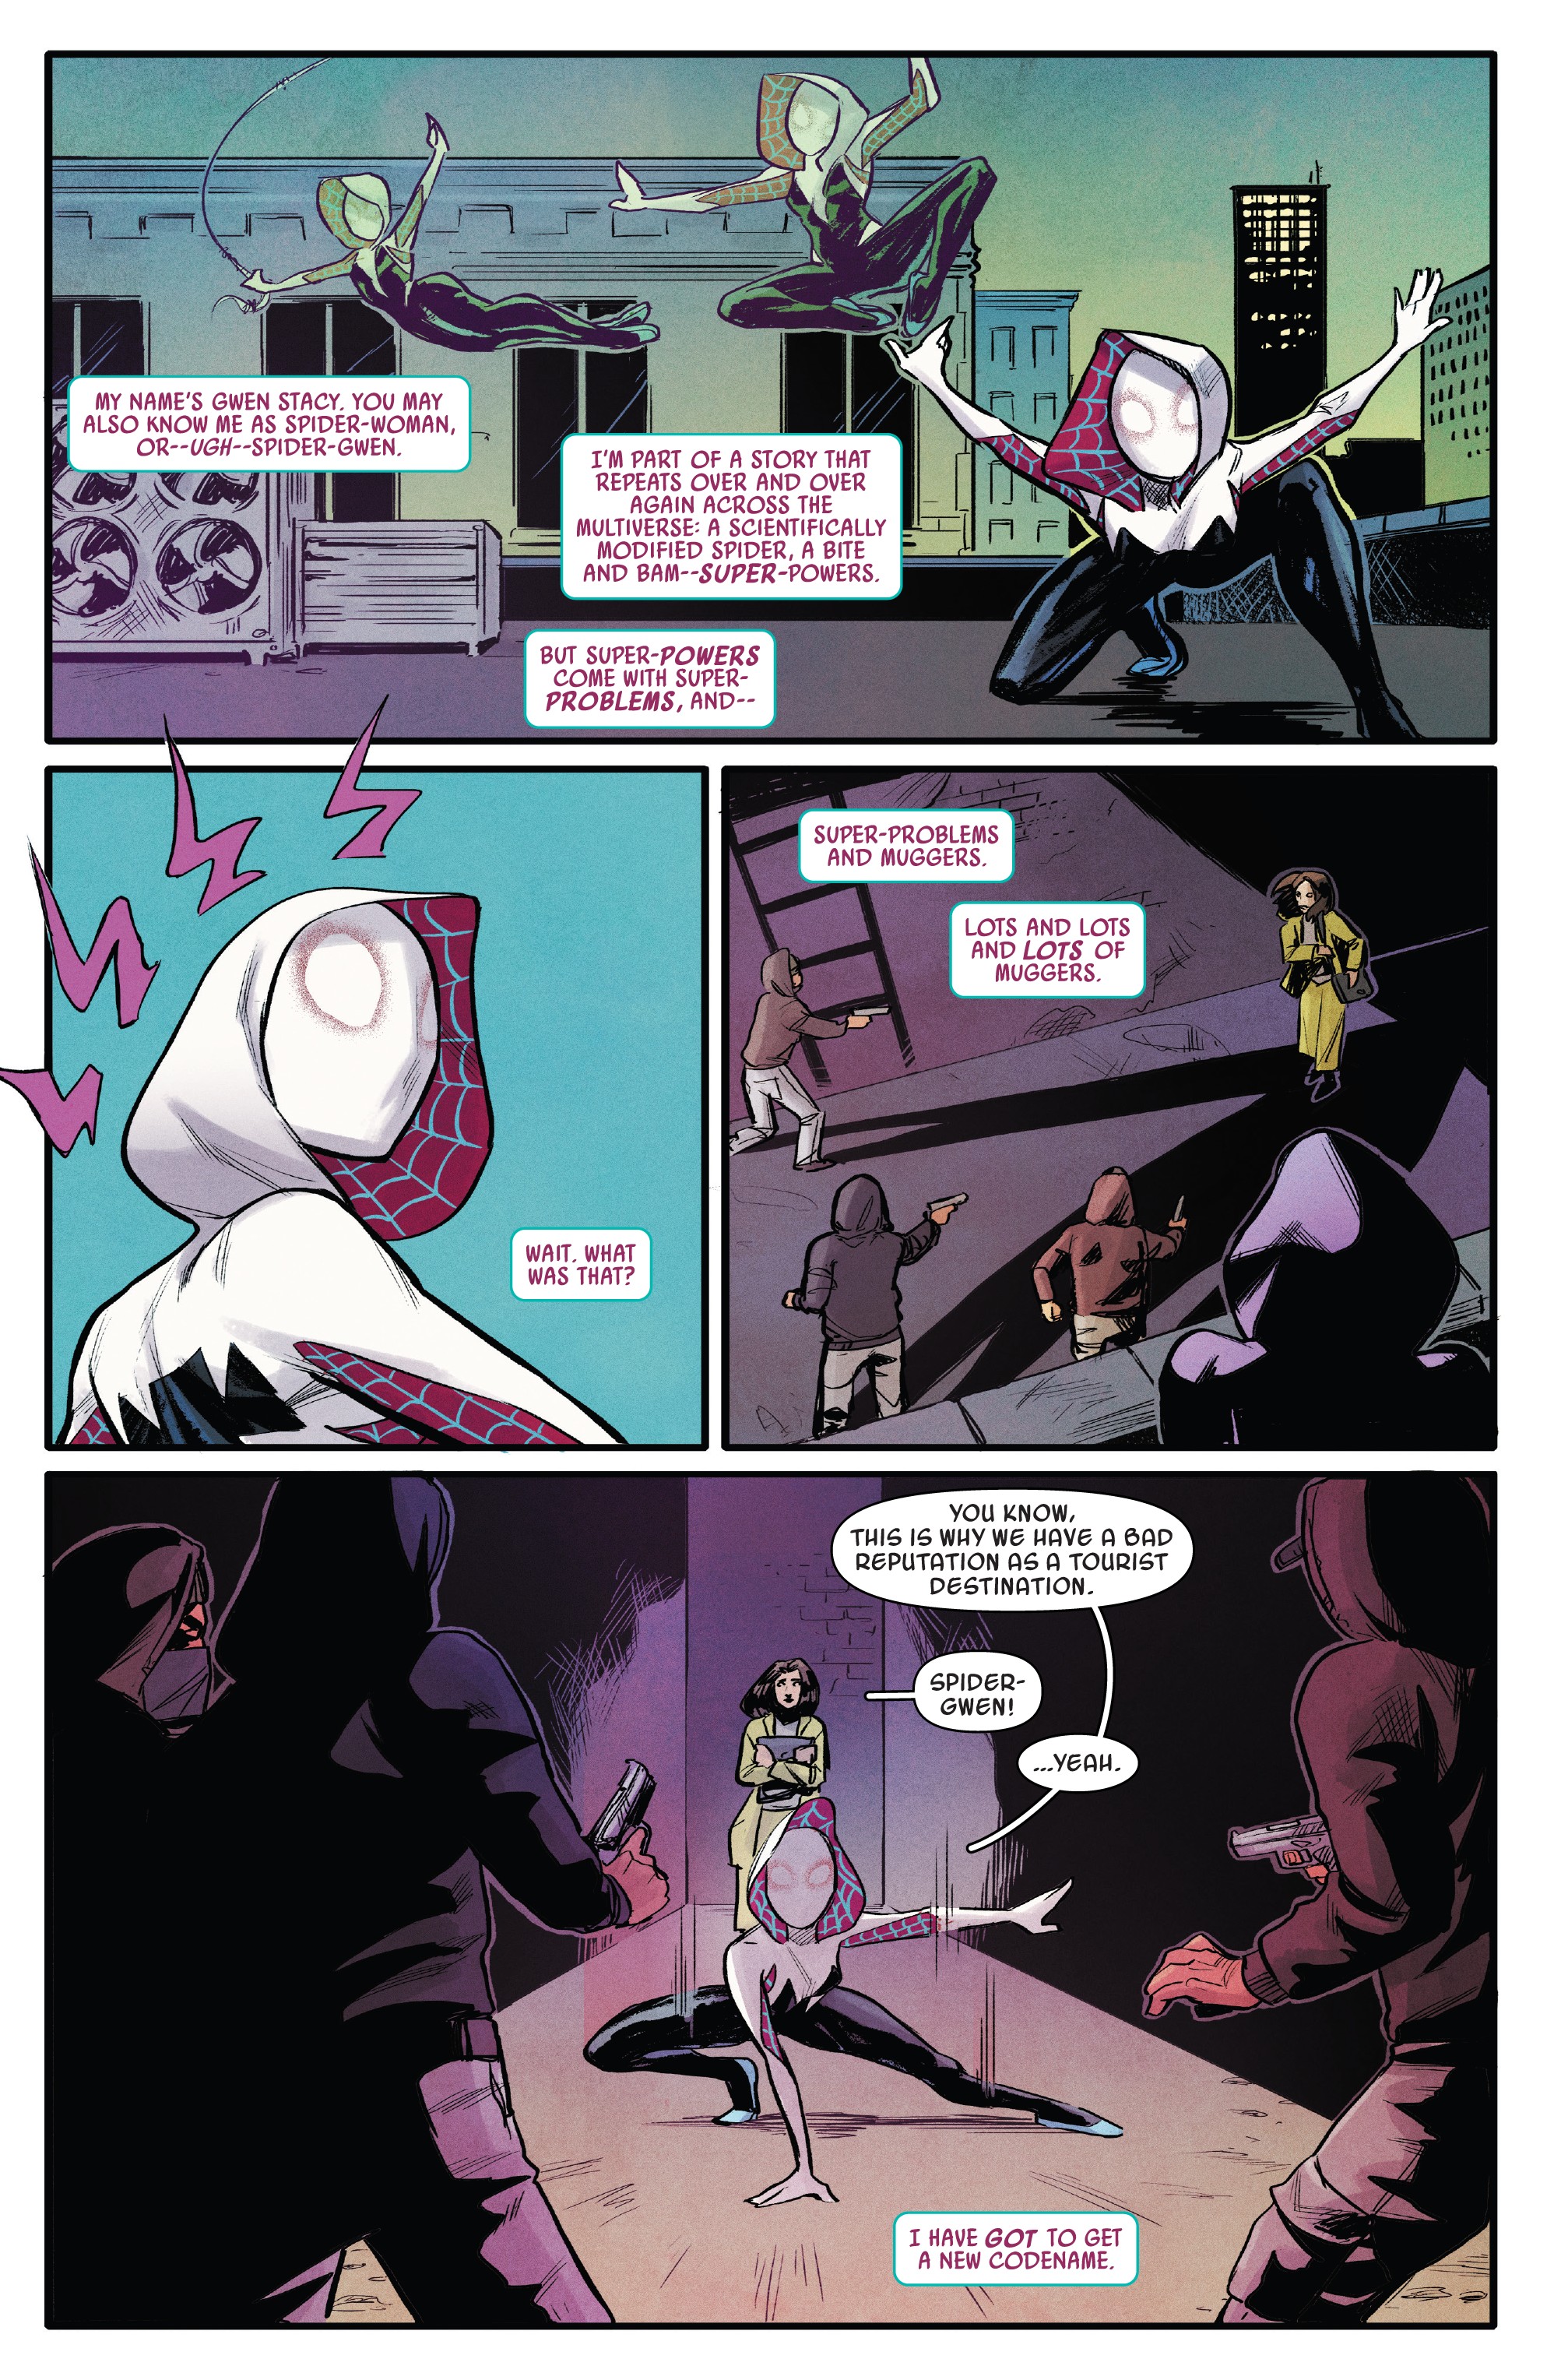 Spider-Gwen: Ghost-Spider (2018-): Chapter 1 - Page 5